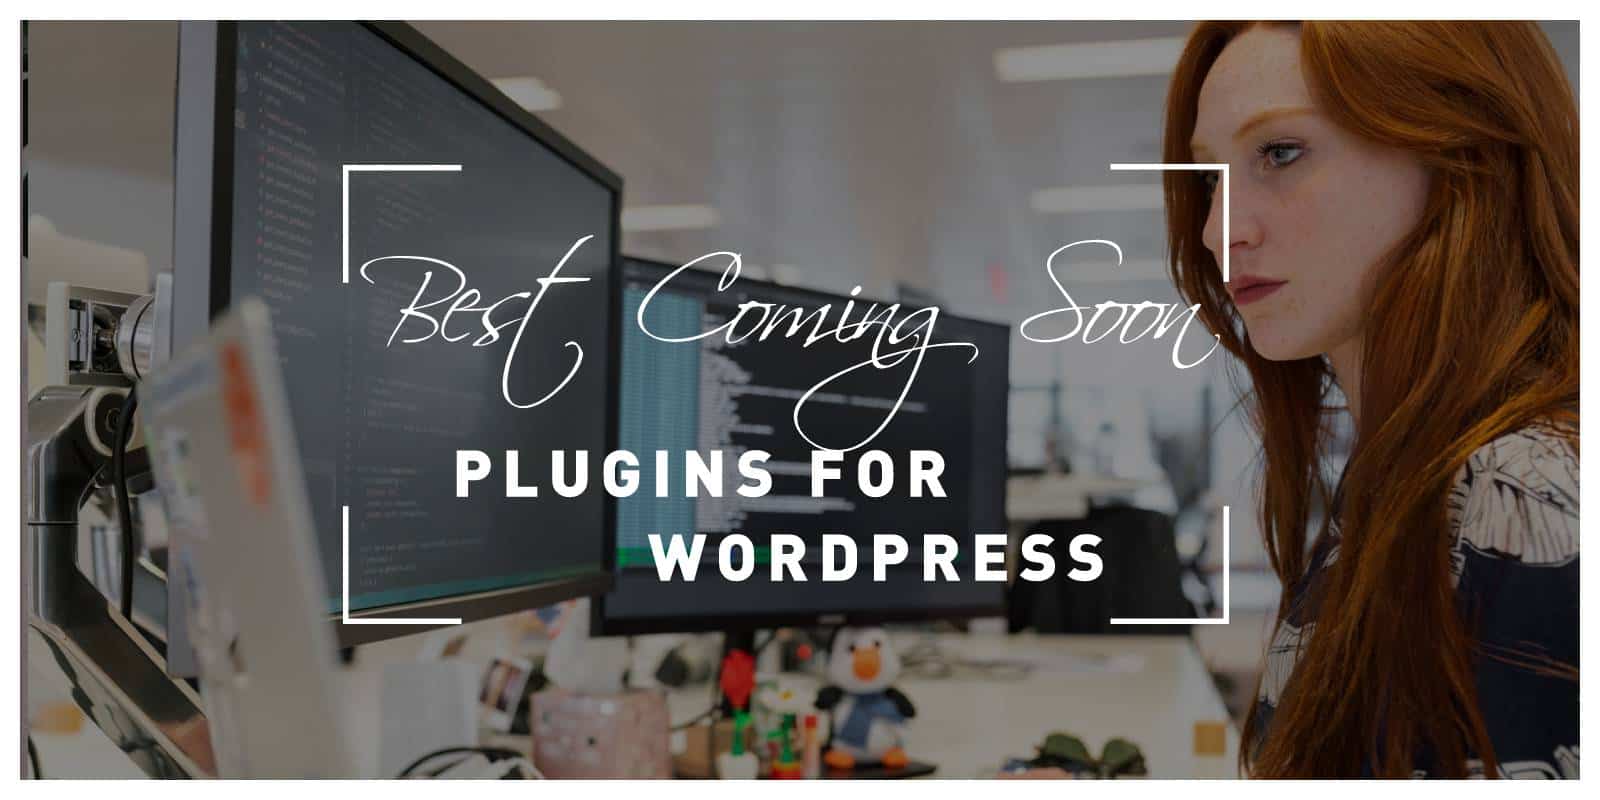 Best Coming Soon Plugins for WordPress